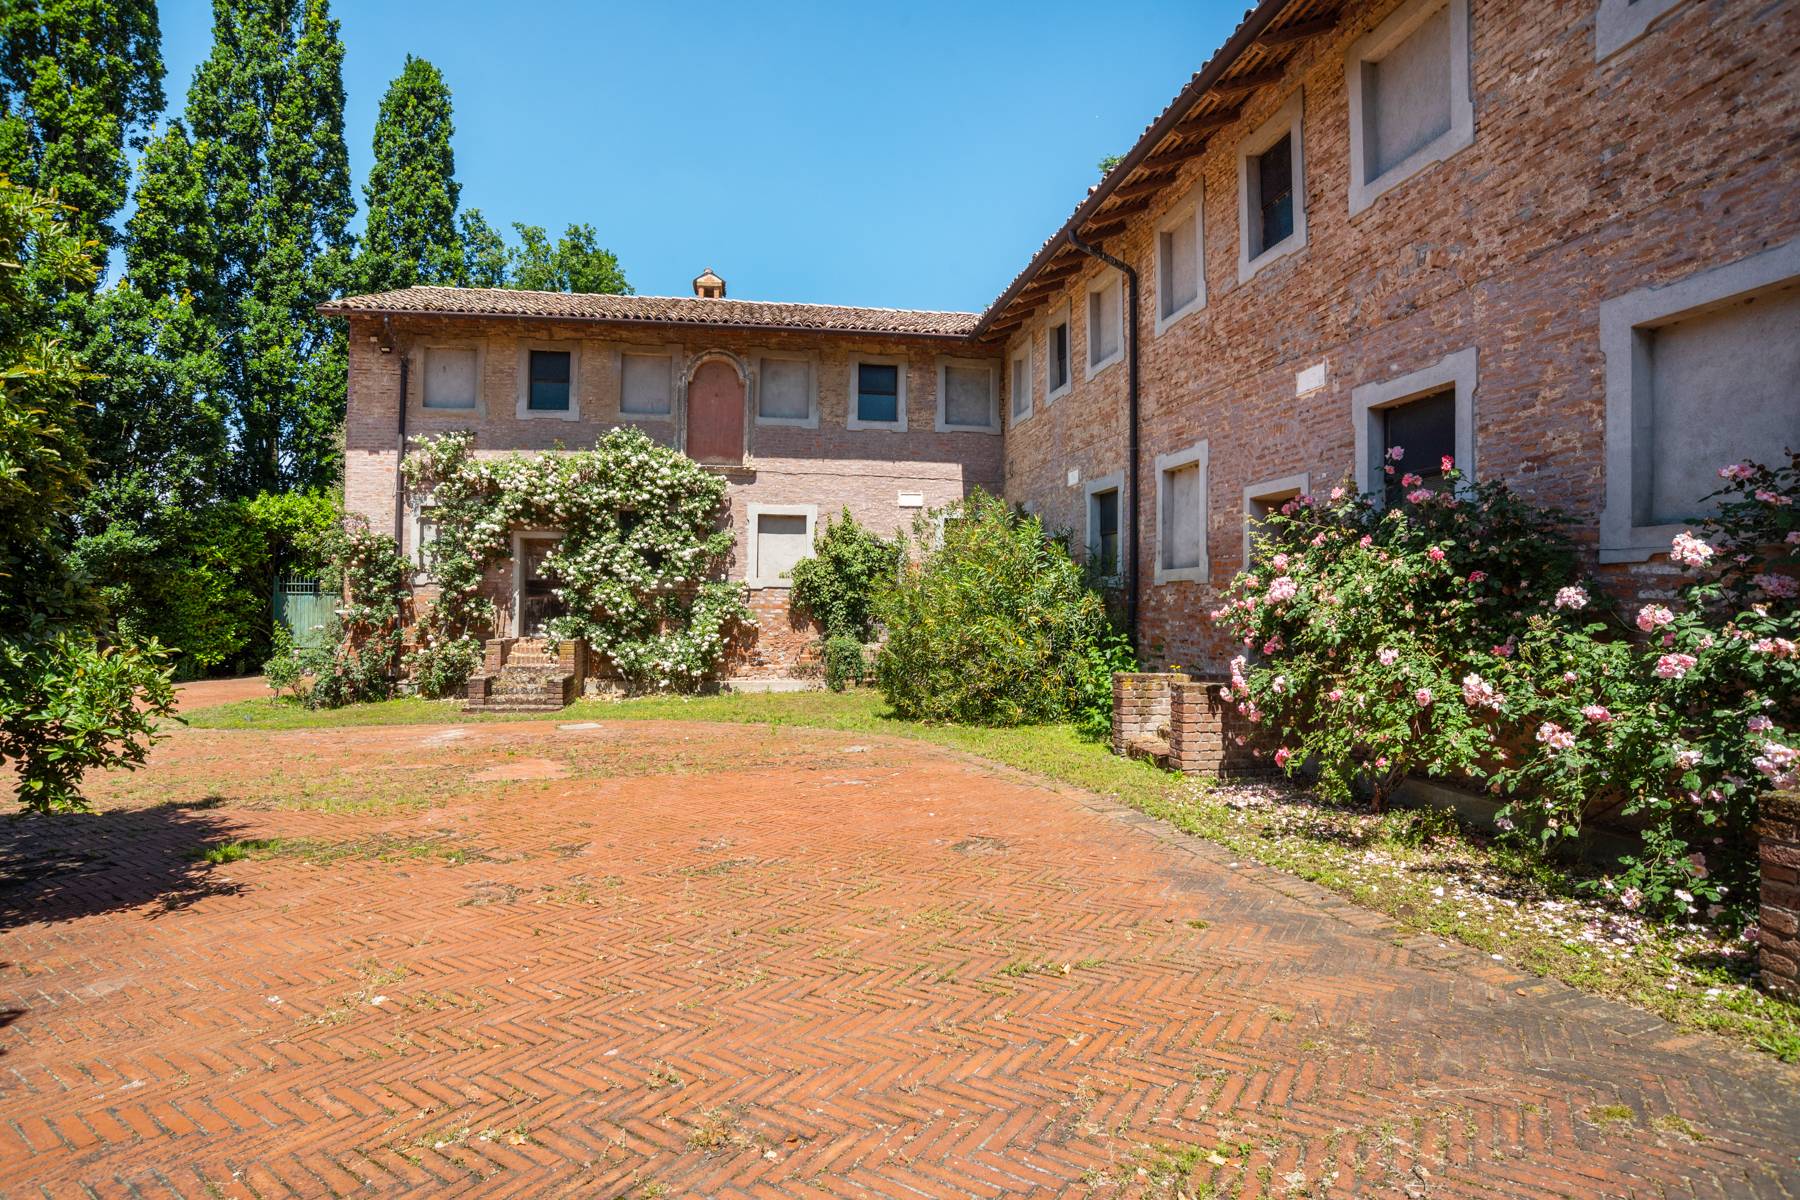 Villa in Vendita a Pavia: 5 locali, 1919 mq - Foto 10